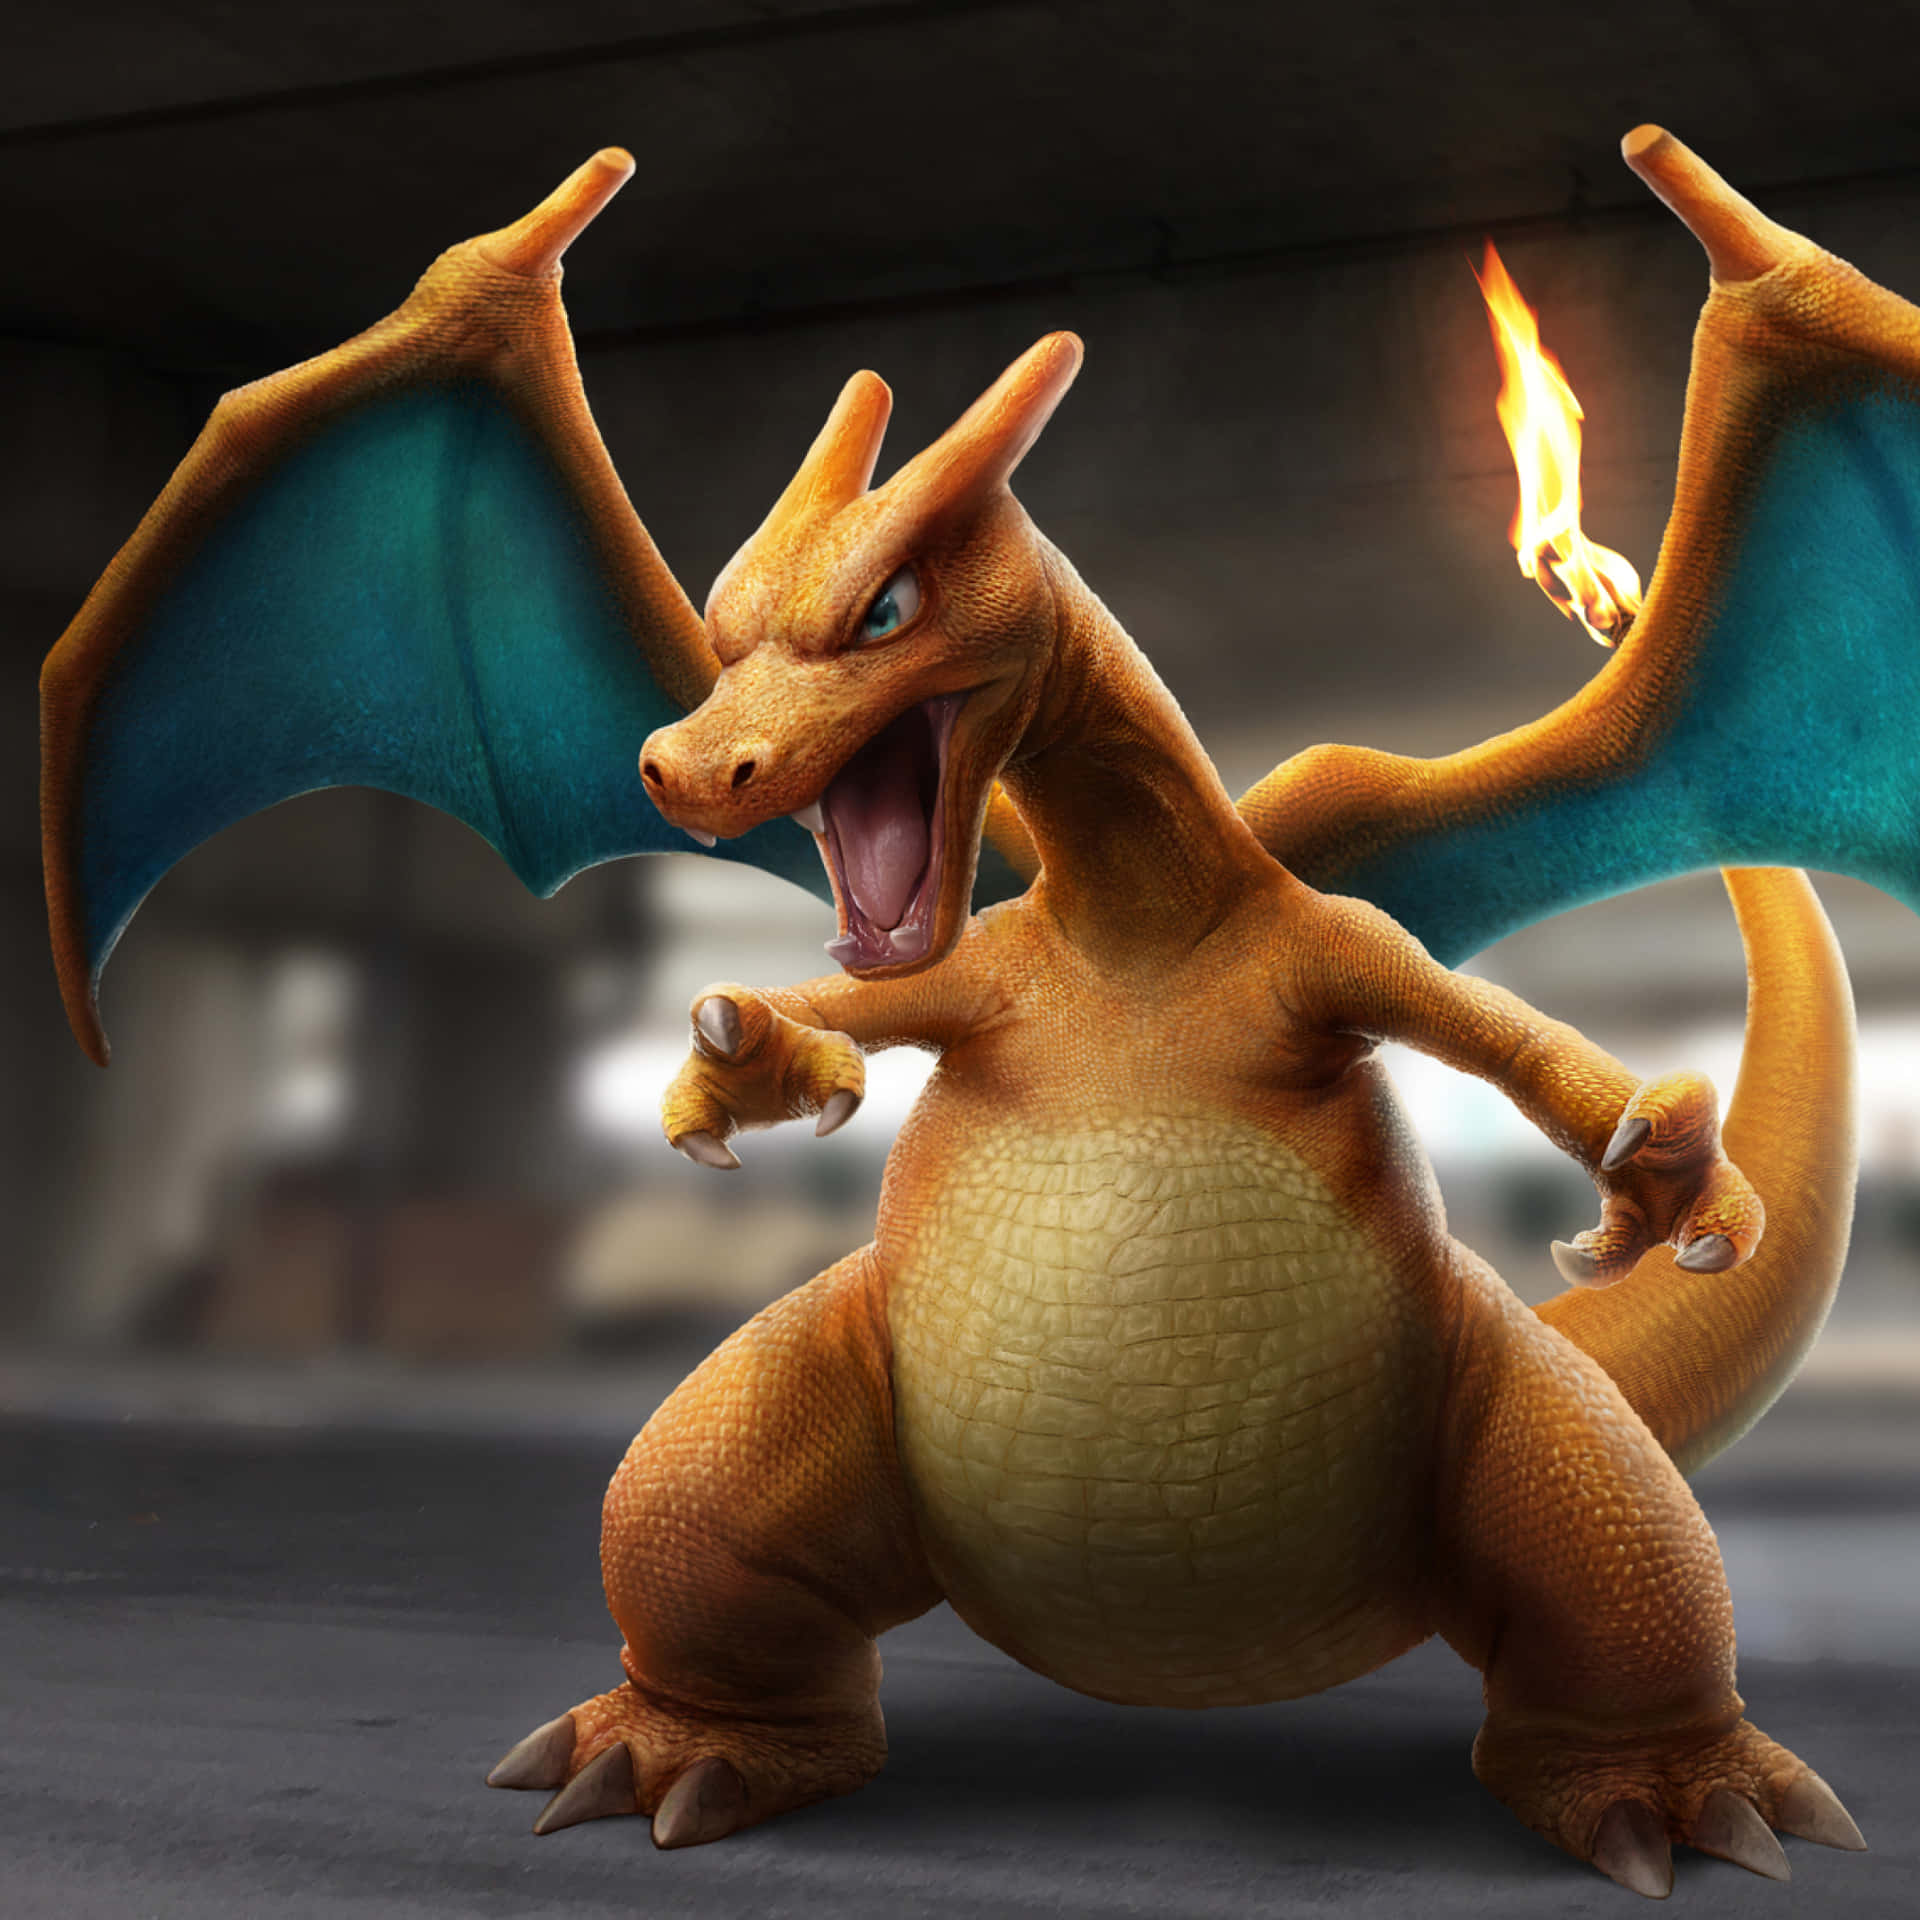 Pokémonlegendario De Tipo Fuego Y Volador, Charizard. Fondo de pantalla